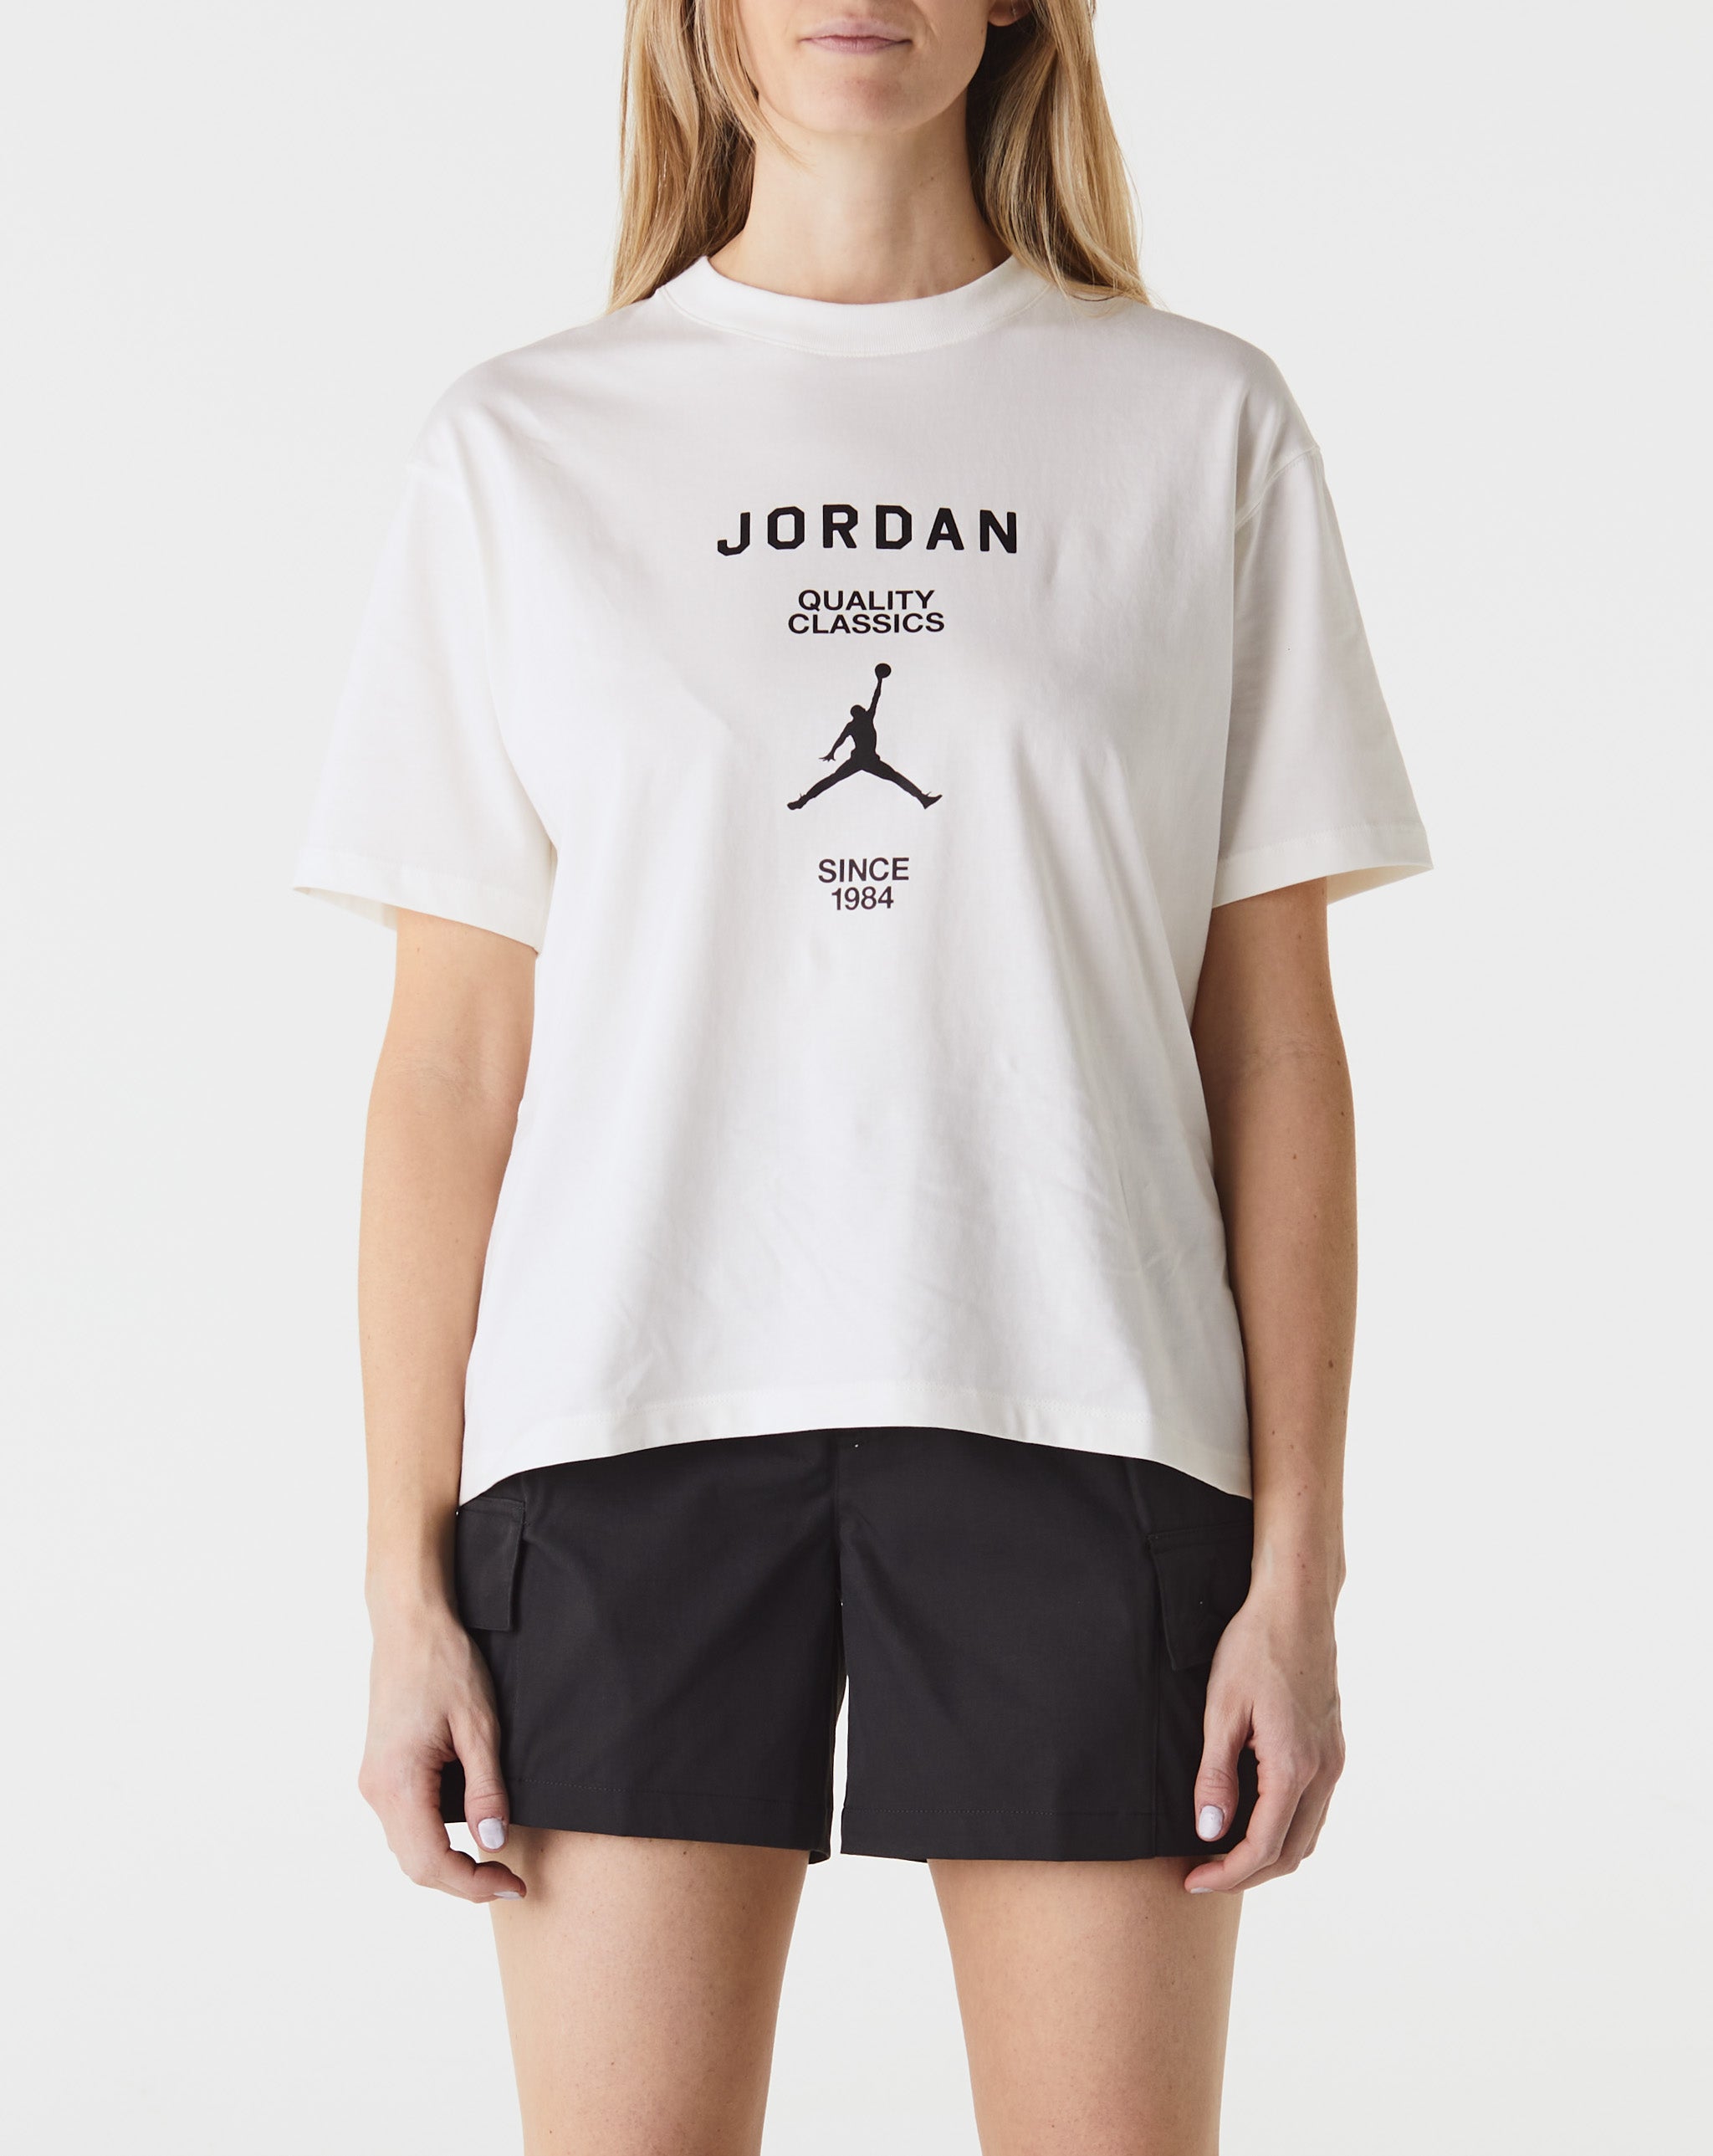 Air Jordan Women's Jordan Quality Classics T-Shirt  - Cheap Erlebniswelt-fliegenfischen Jordan outlet